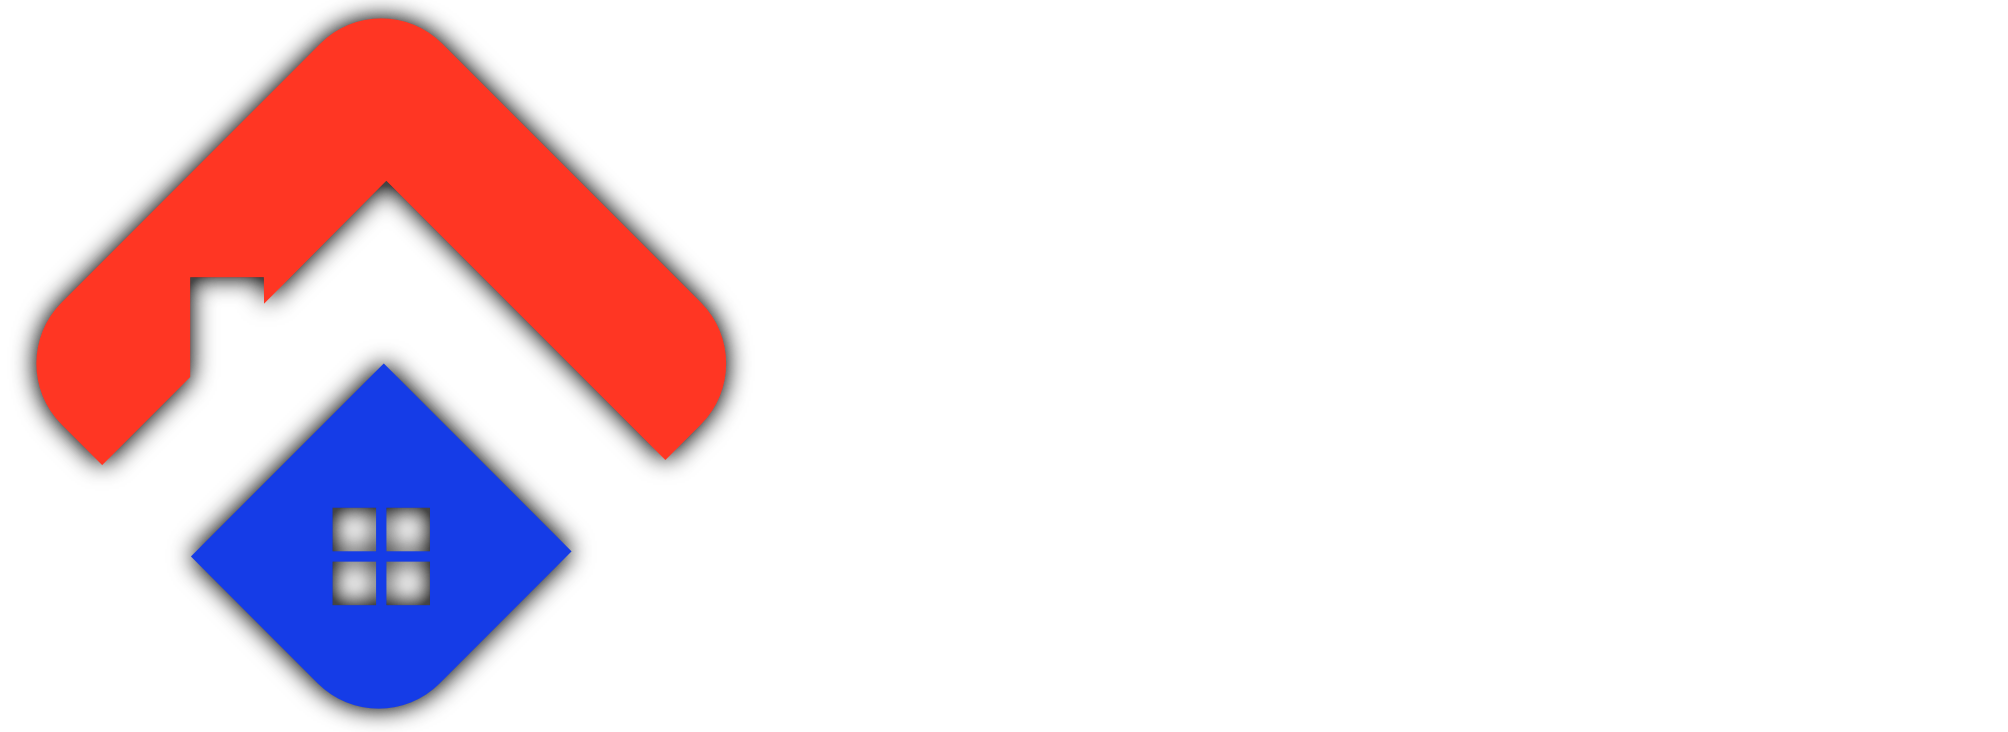 Sky Properties logo